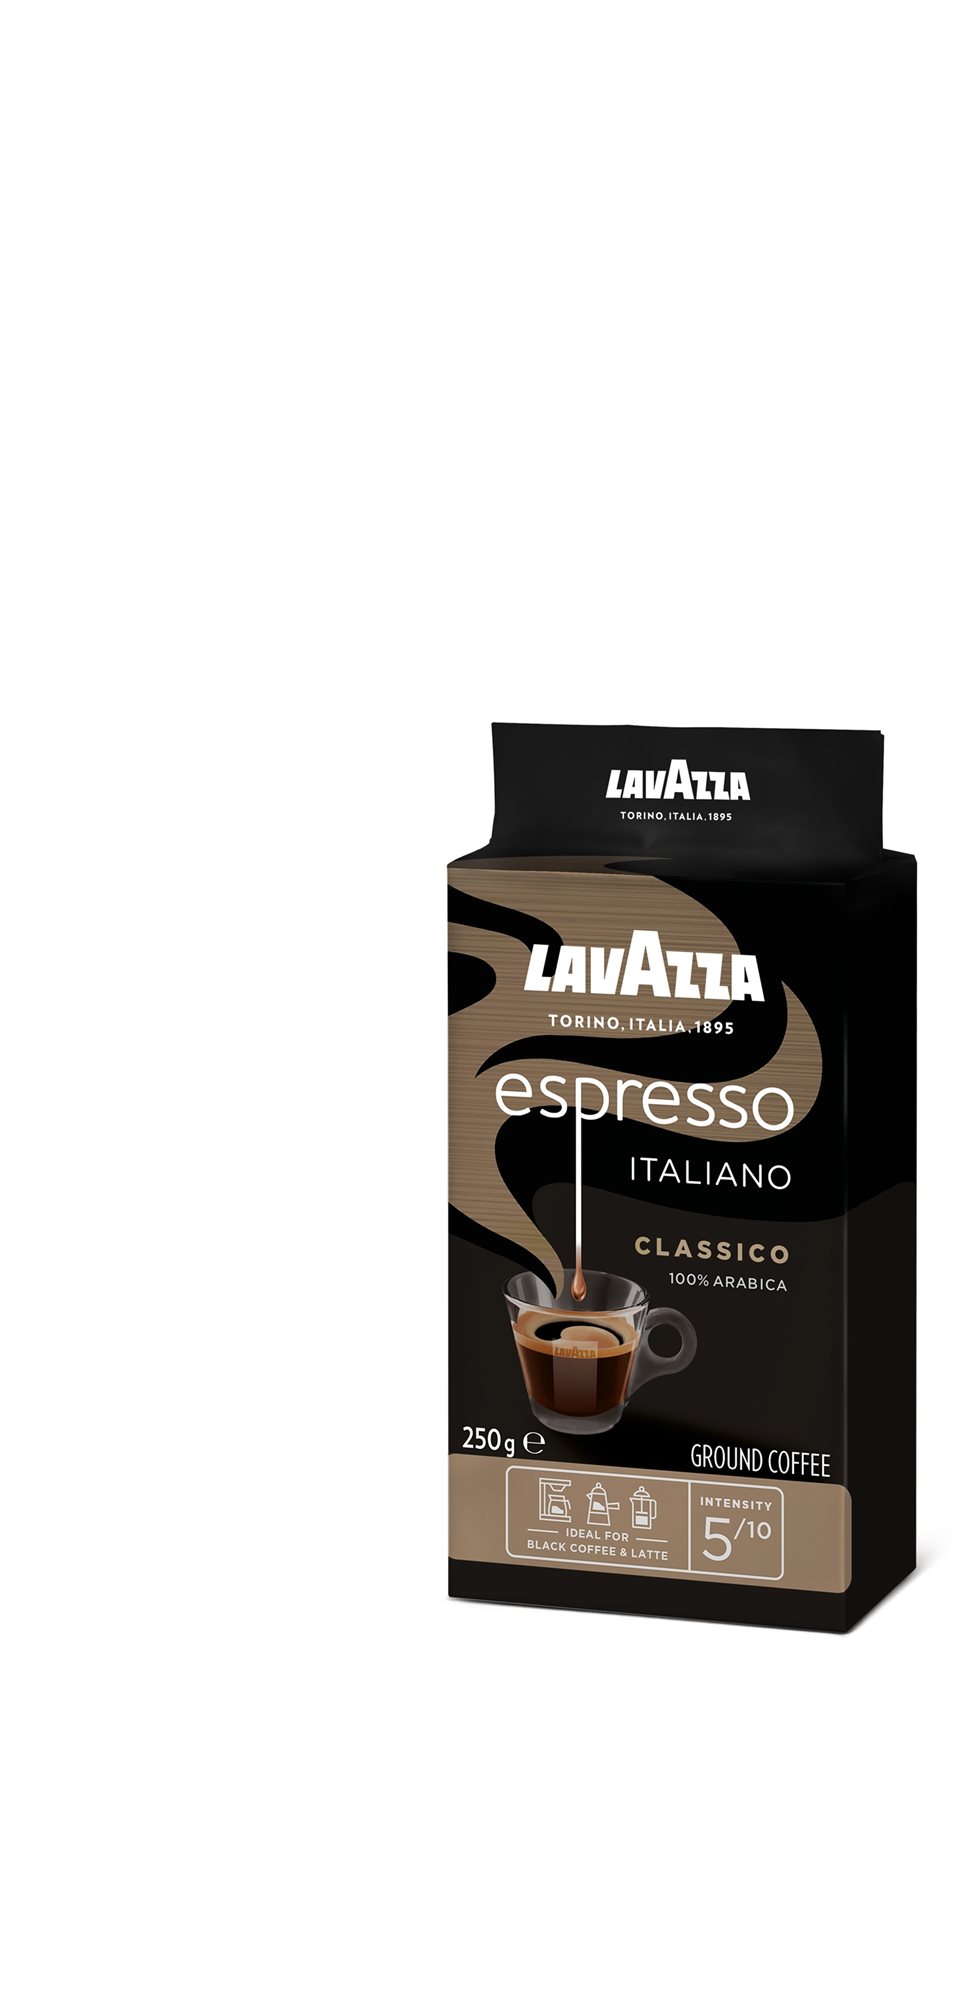 Lavazza Caffe Espresso, őrölt, 250g, vákuumcsomagolásban